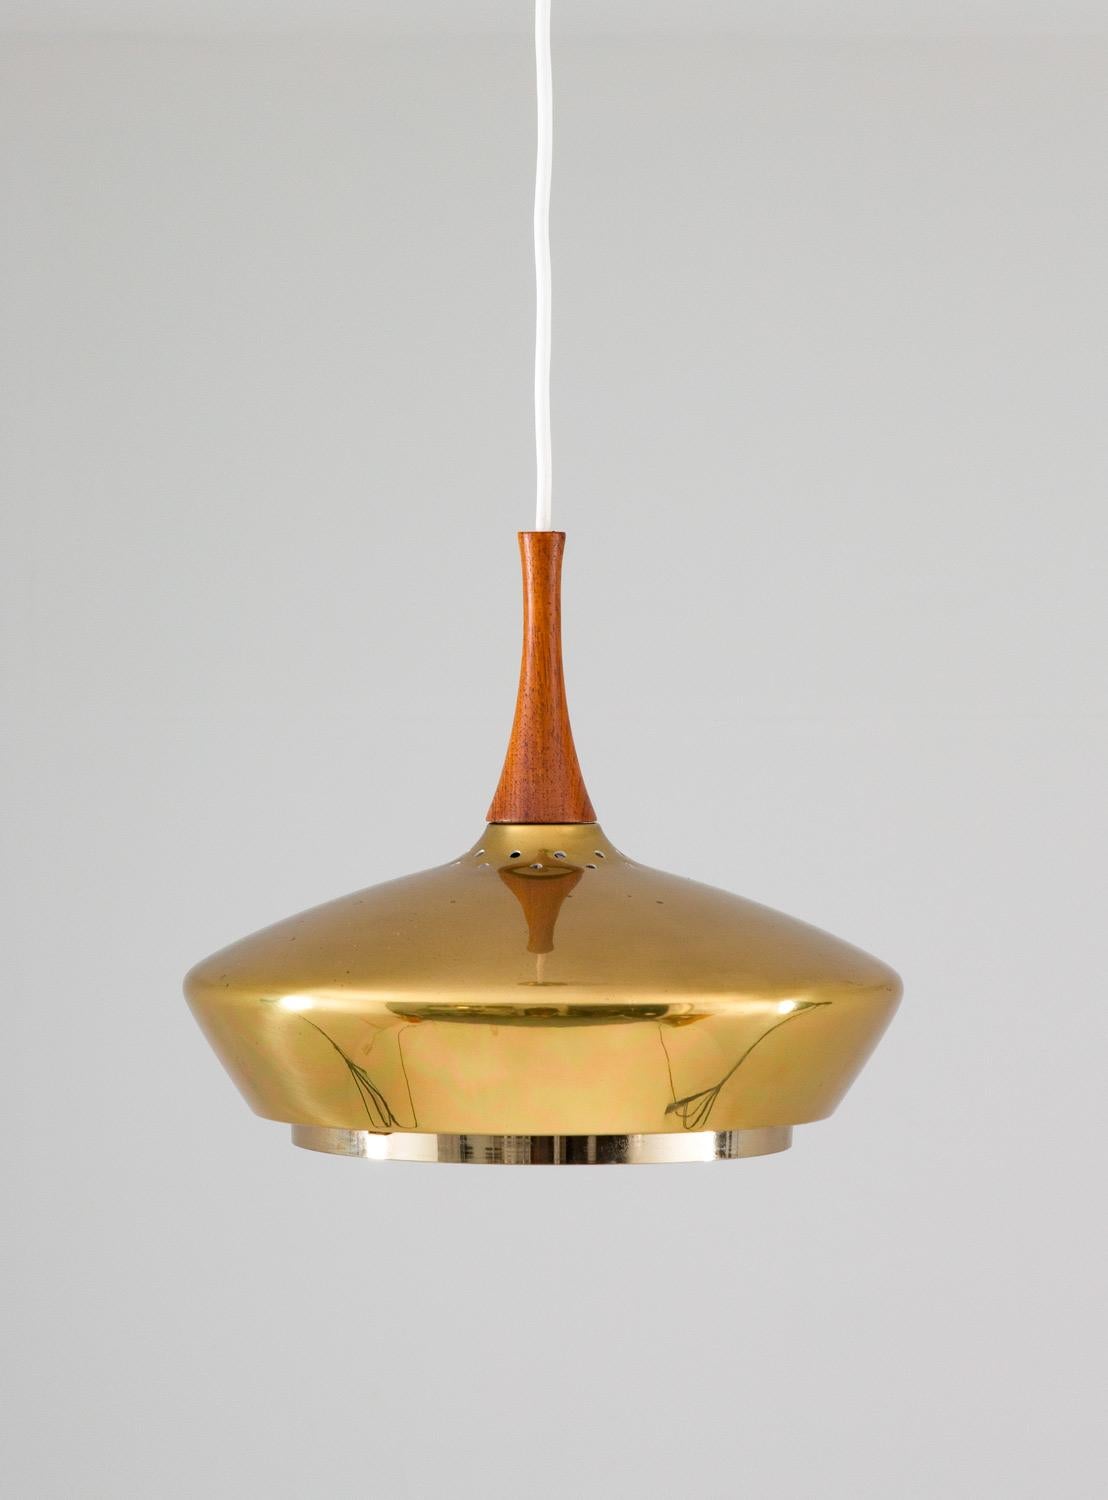 Seltene Deckenlampe aus Messing und Holz, hergestellt von Fagerhult, Schweden.
Die Lampe ist aus dickem Messing gefertigt und wird mit ihrem originalen Messingbaldachin geliefert. Die schöne Form erinnert stark an das Modell 